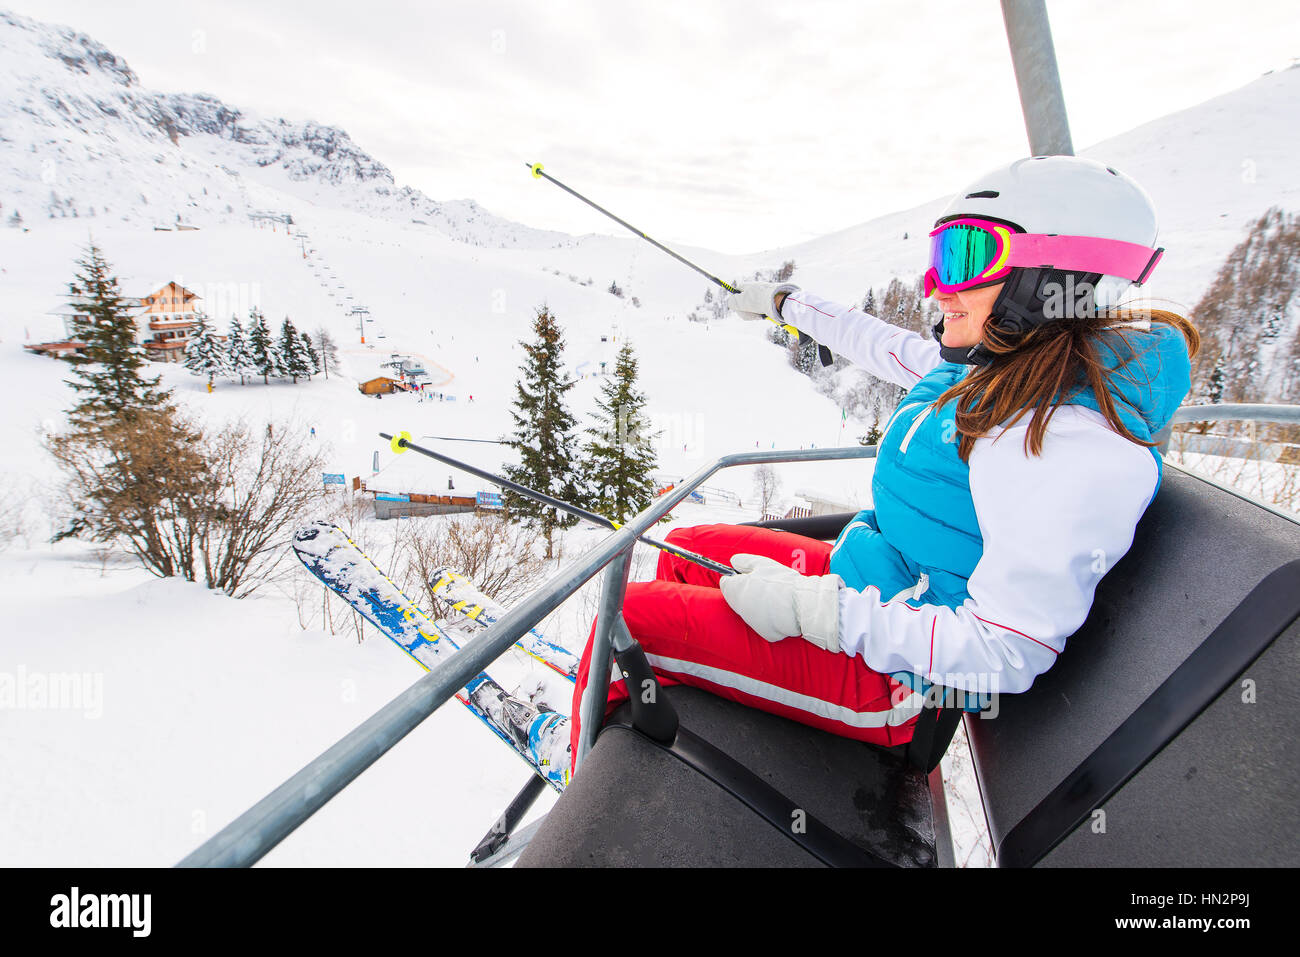 La skieuse de sexe féminin en télésiège ski alpes Banque D'Images